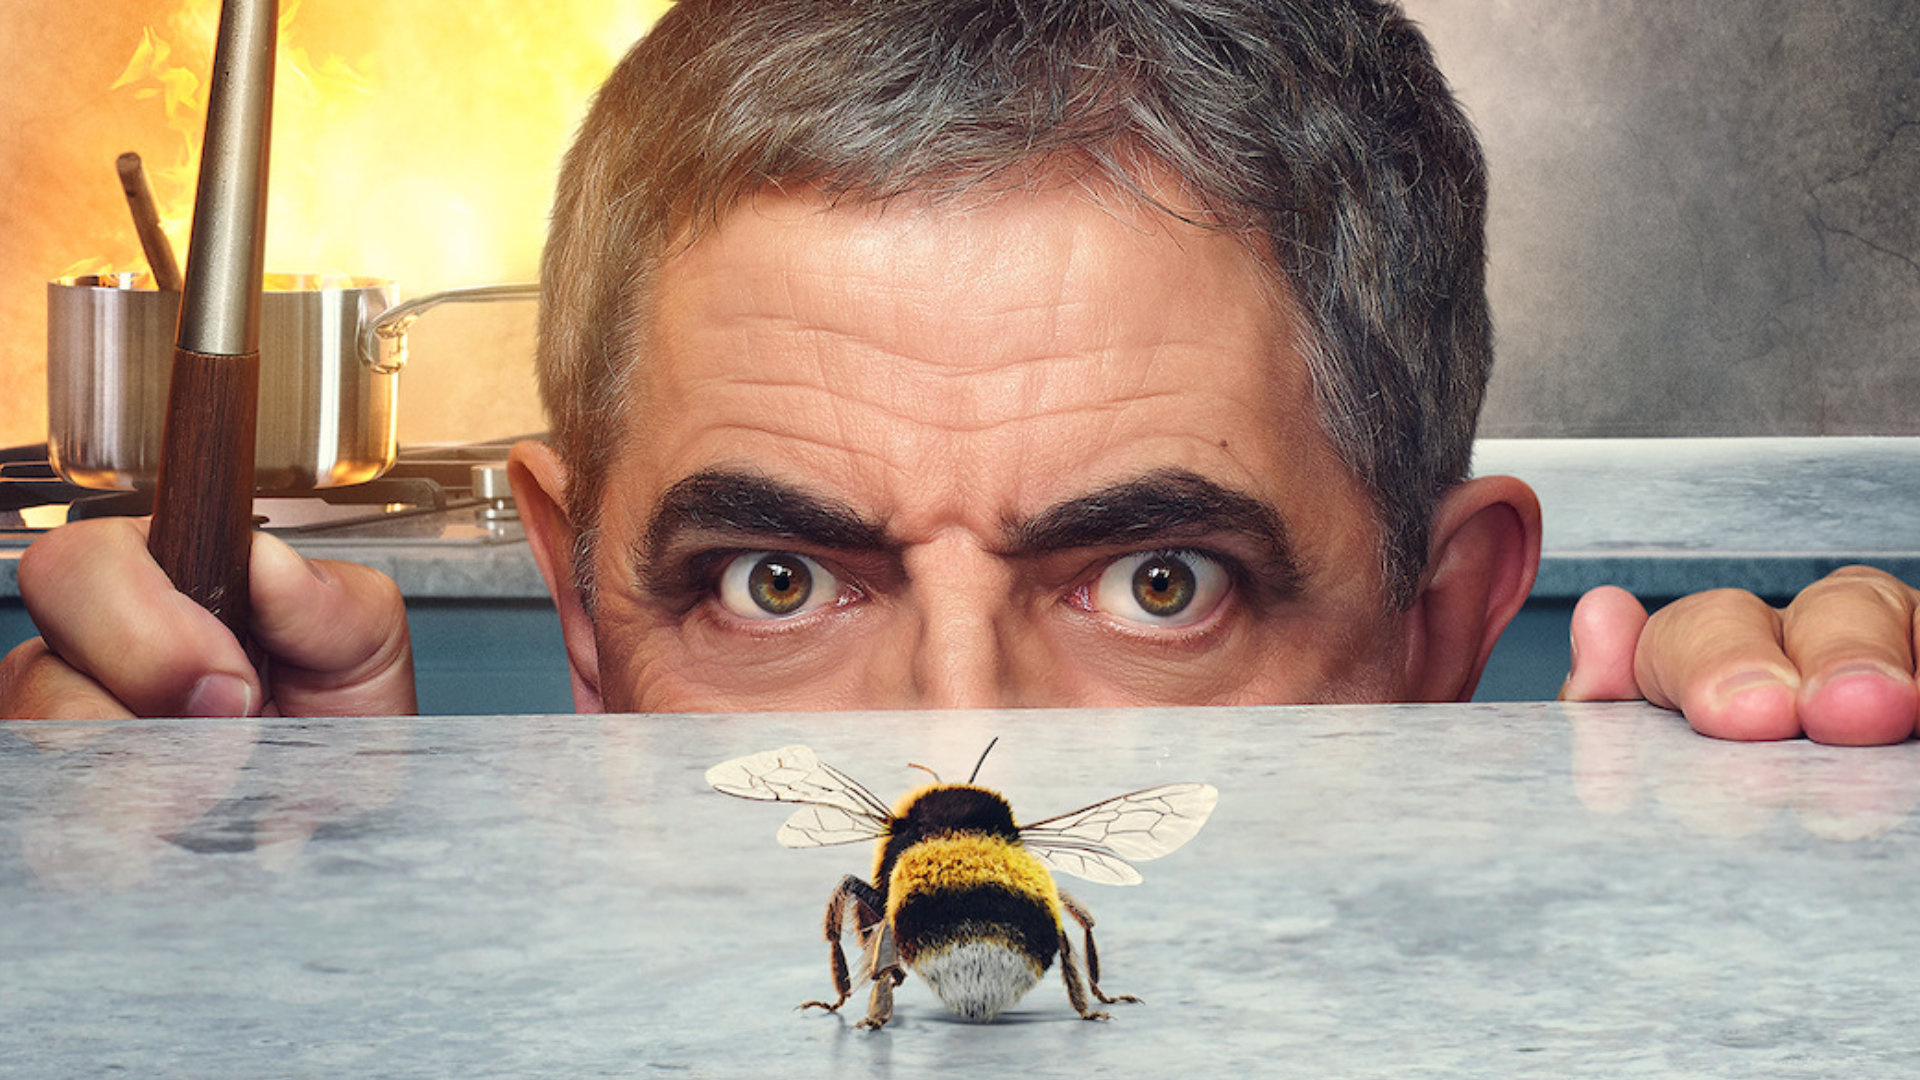 Man vs. Bee, Rowan Atkinson, Release date, Netflix comedy, 1920x1080 Full HD Desktop